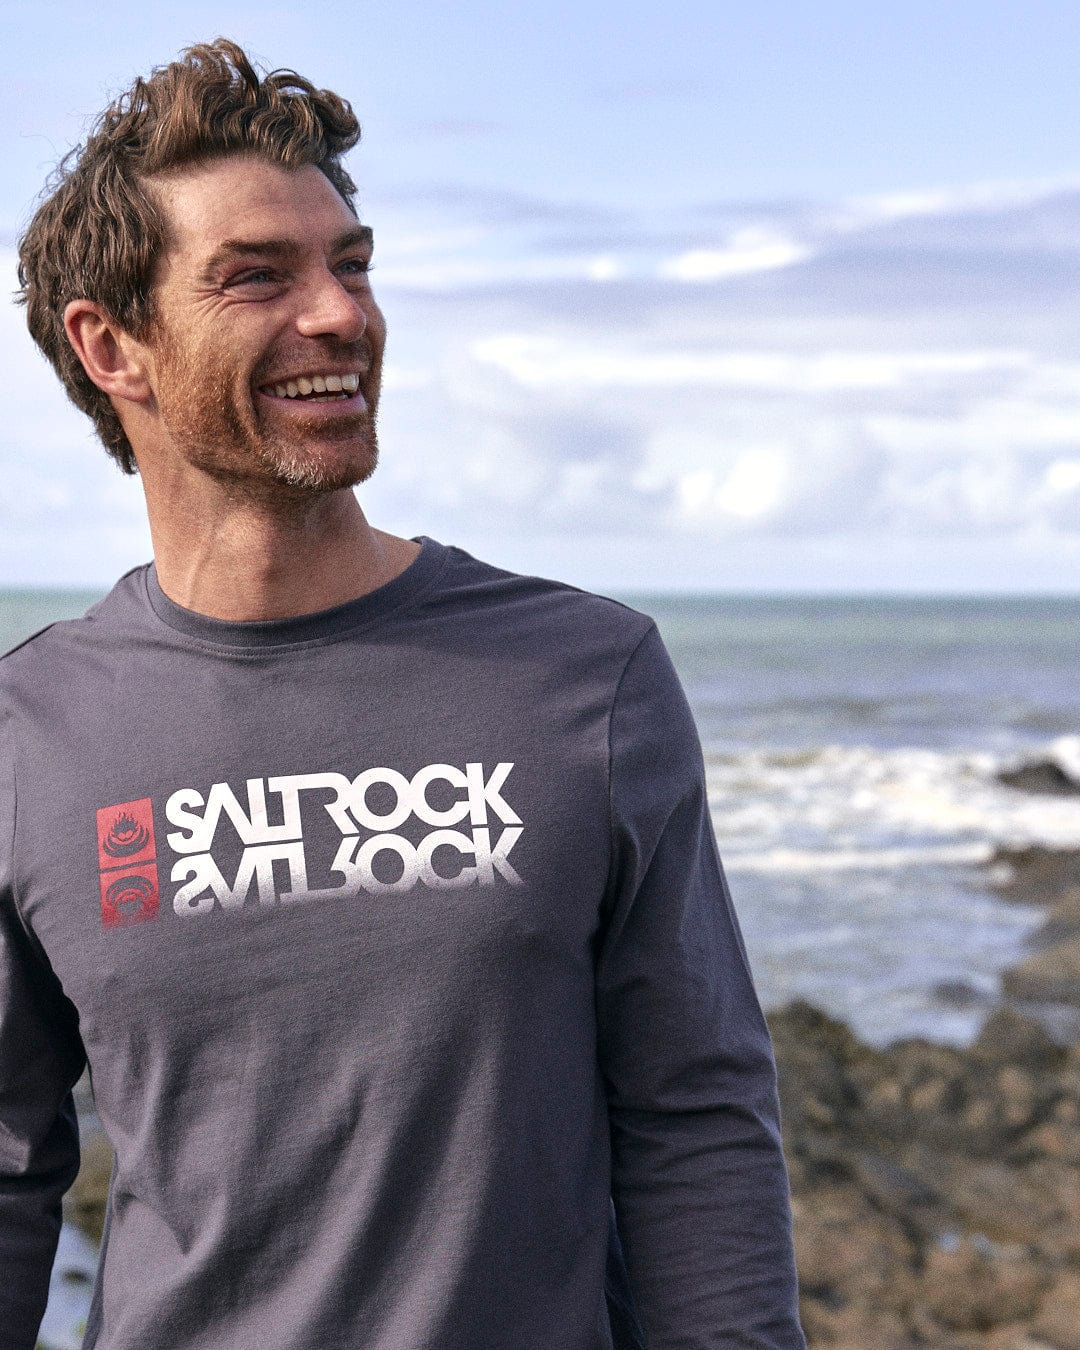 A man wearing a Saltrock Reflect - Mens Long Sleeve T-Shirt - Grey with Saltrock branding.